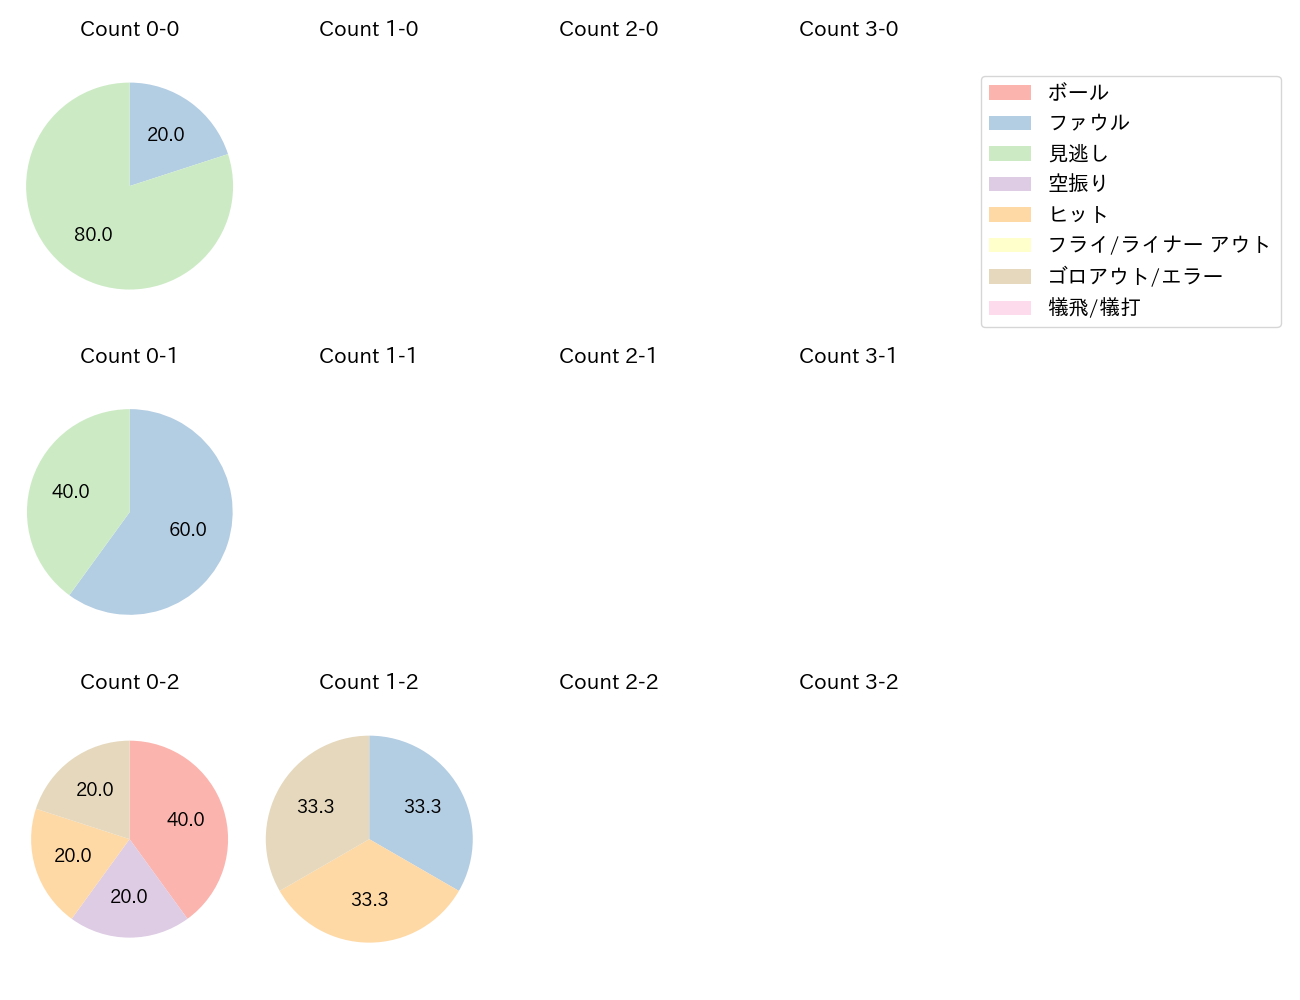 石川 慎吾の球数分布(2021年5月)